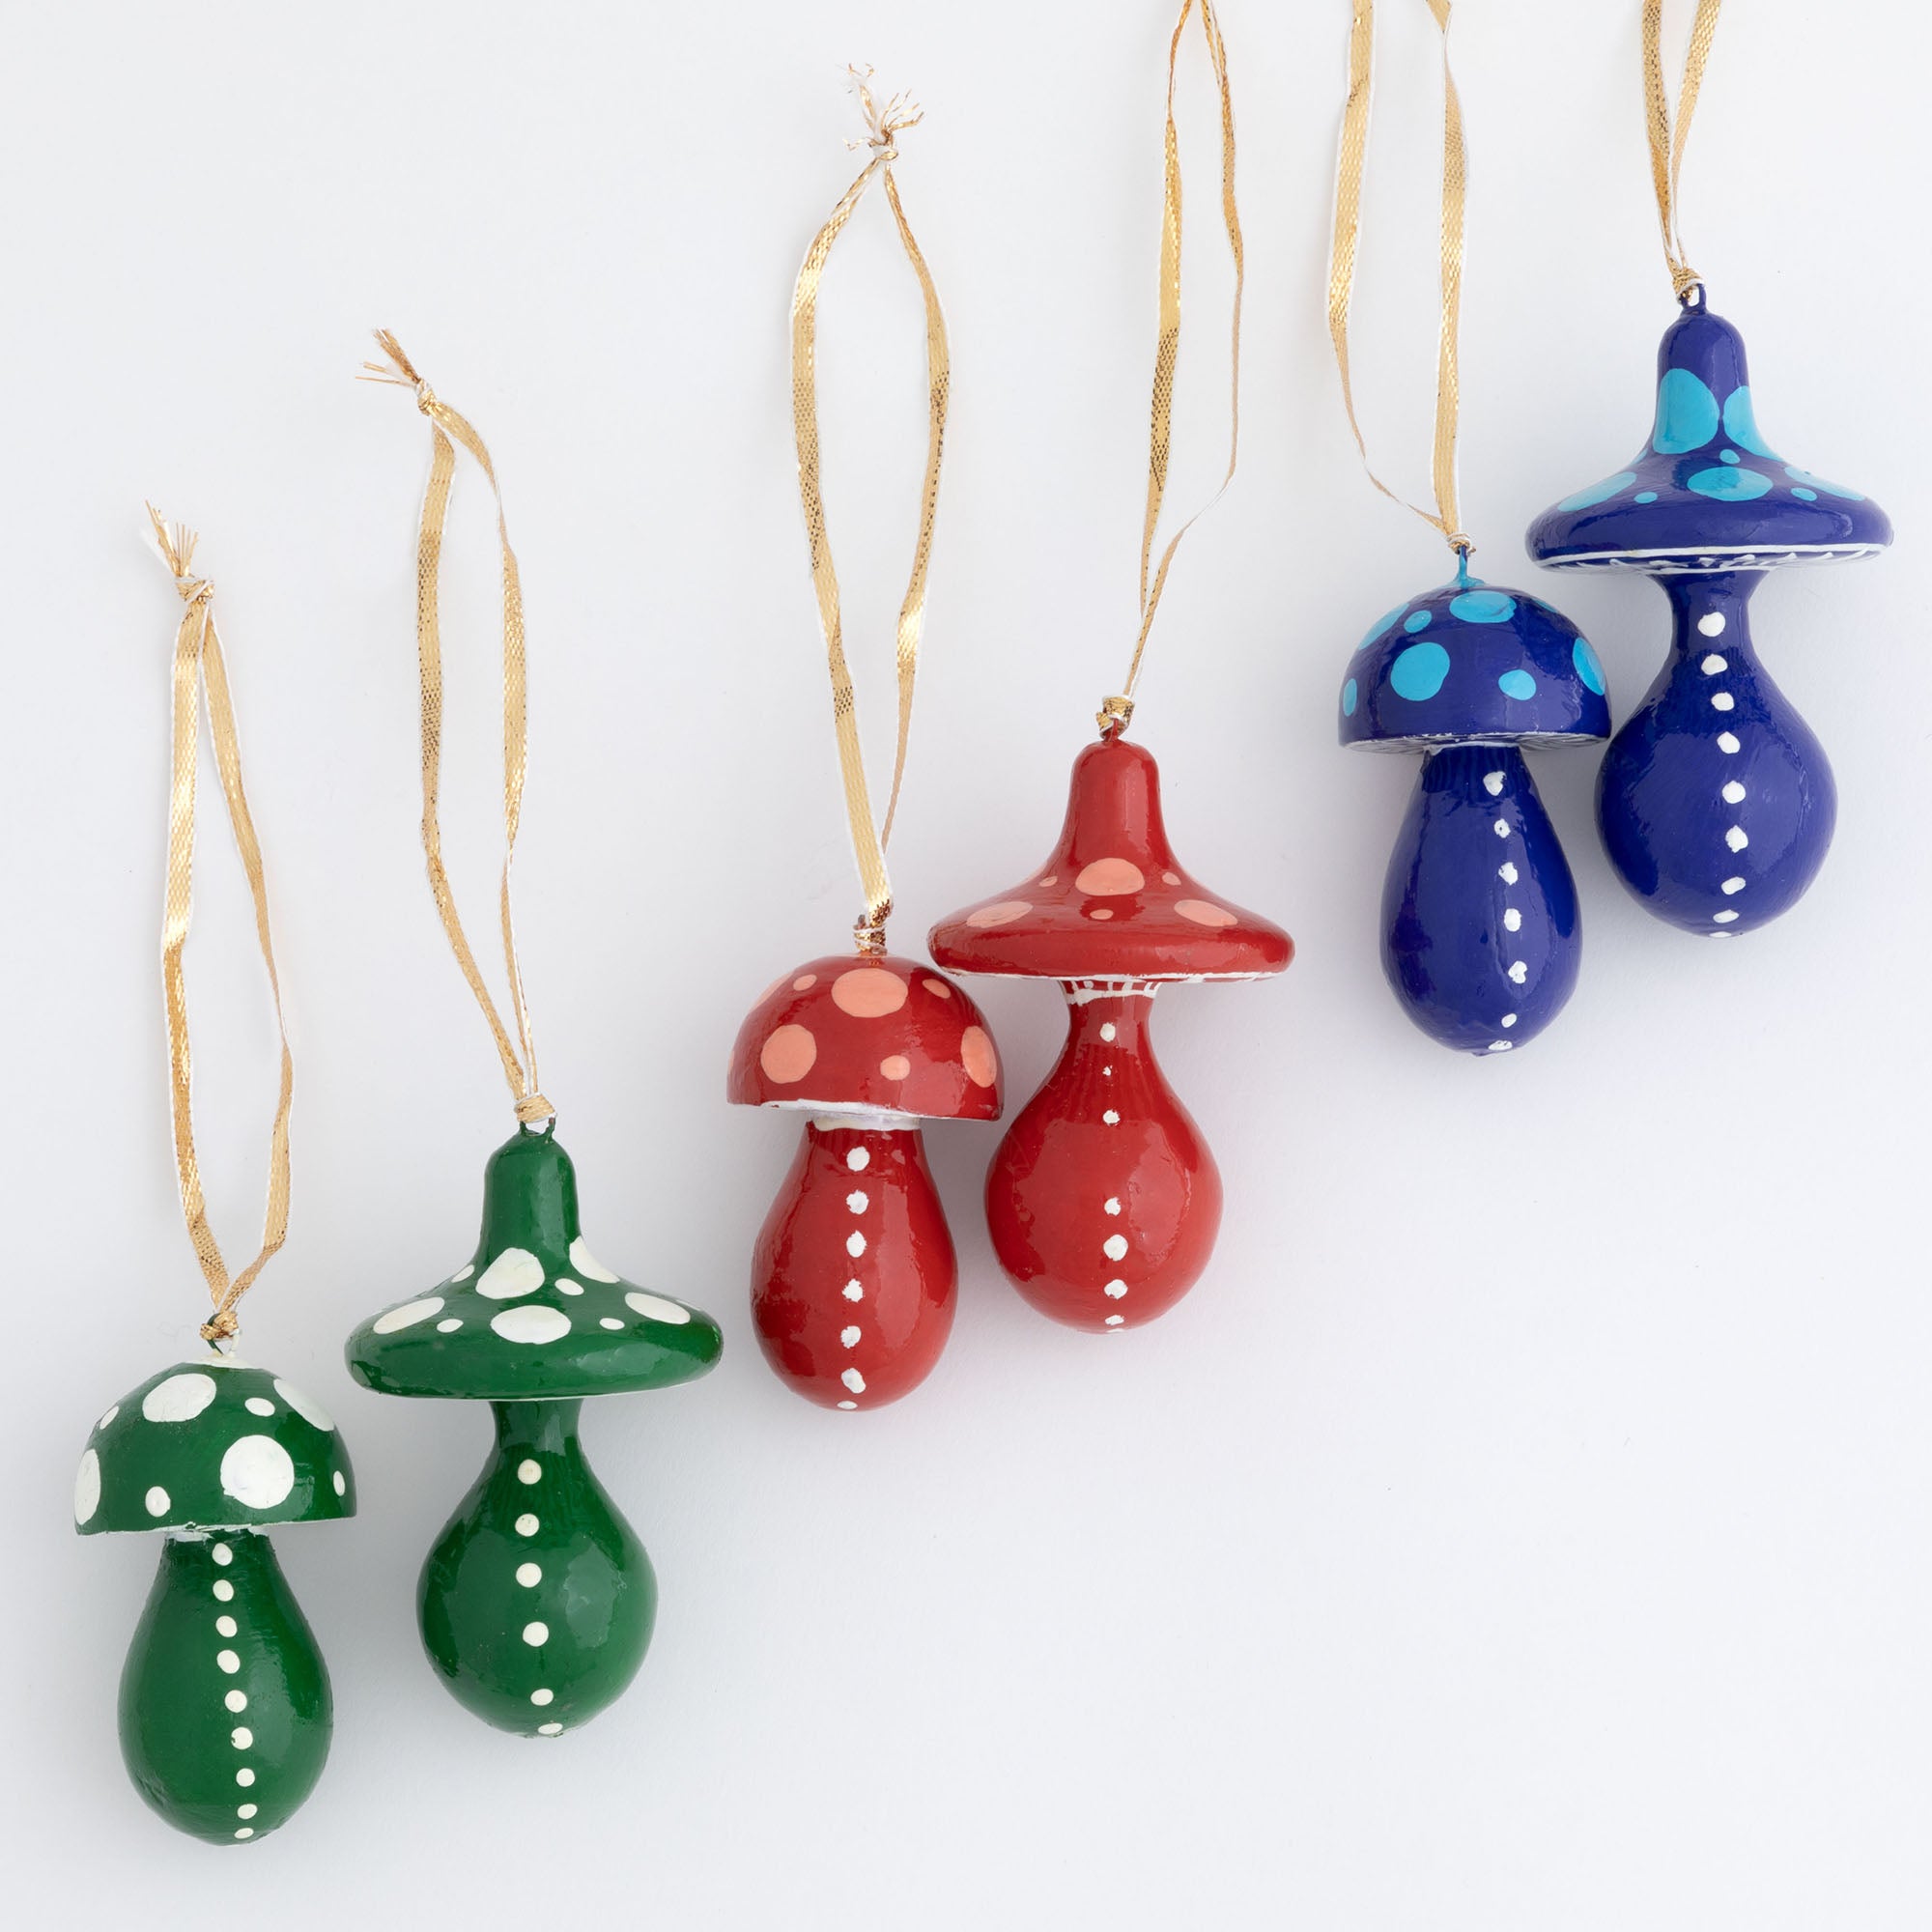 Hand Painted Mushroom Ornaments - Set Of 2 - Blue